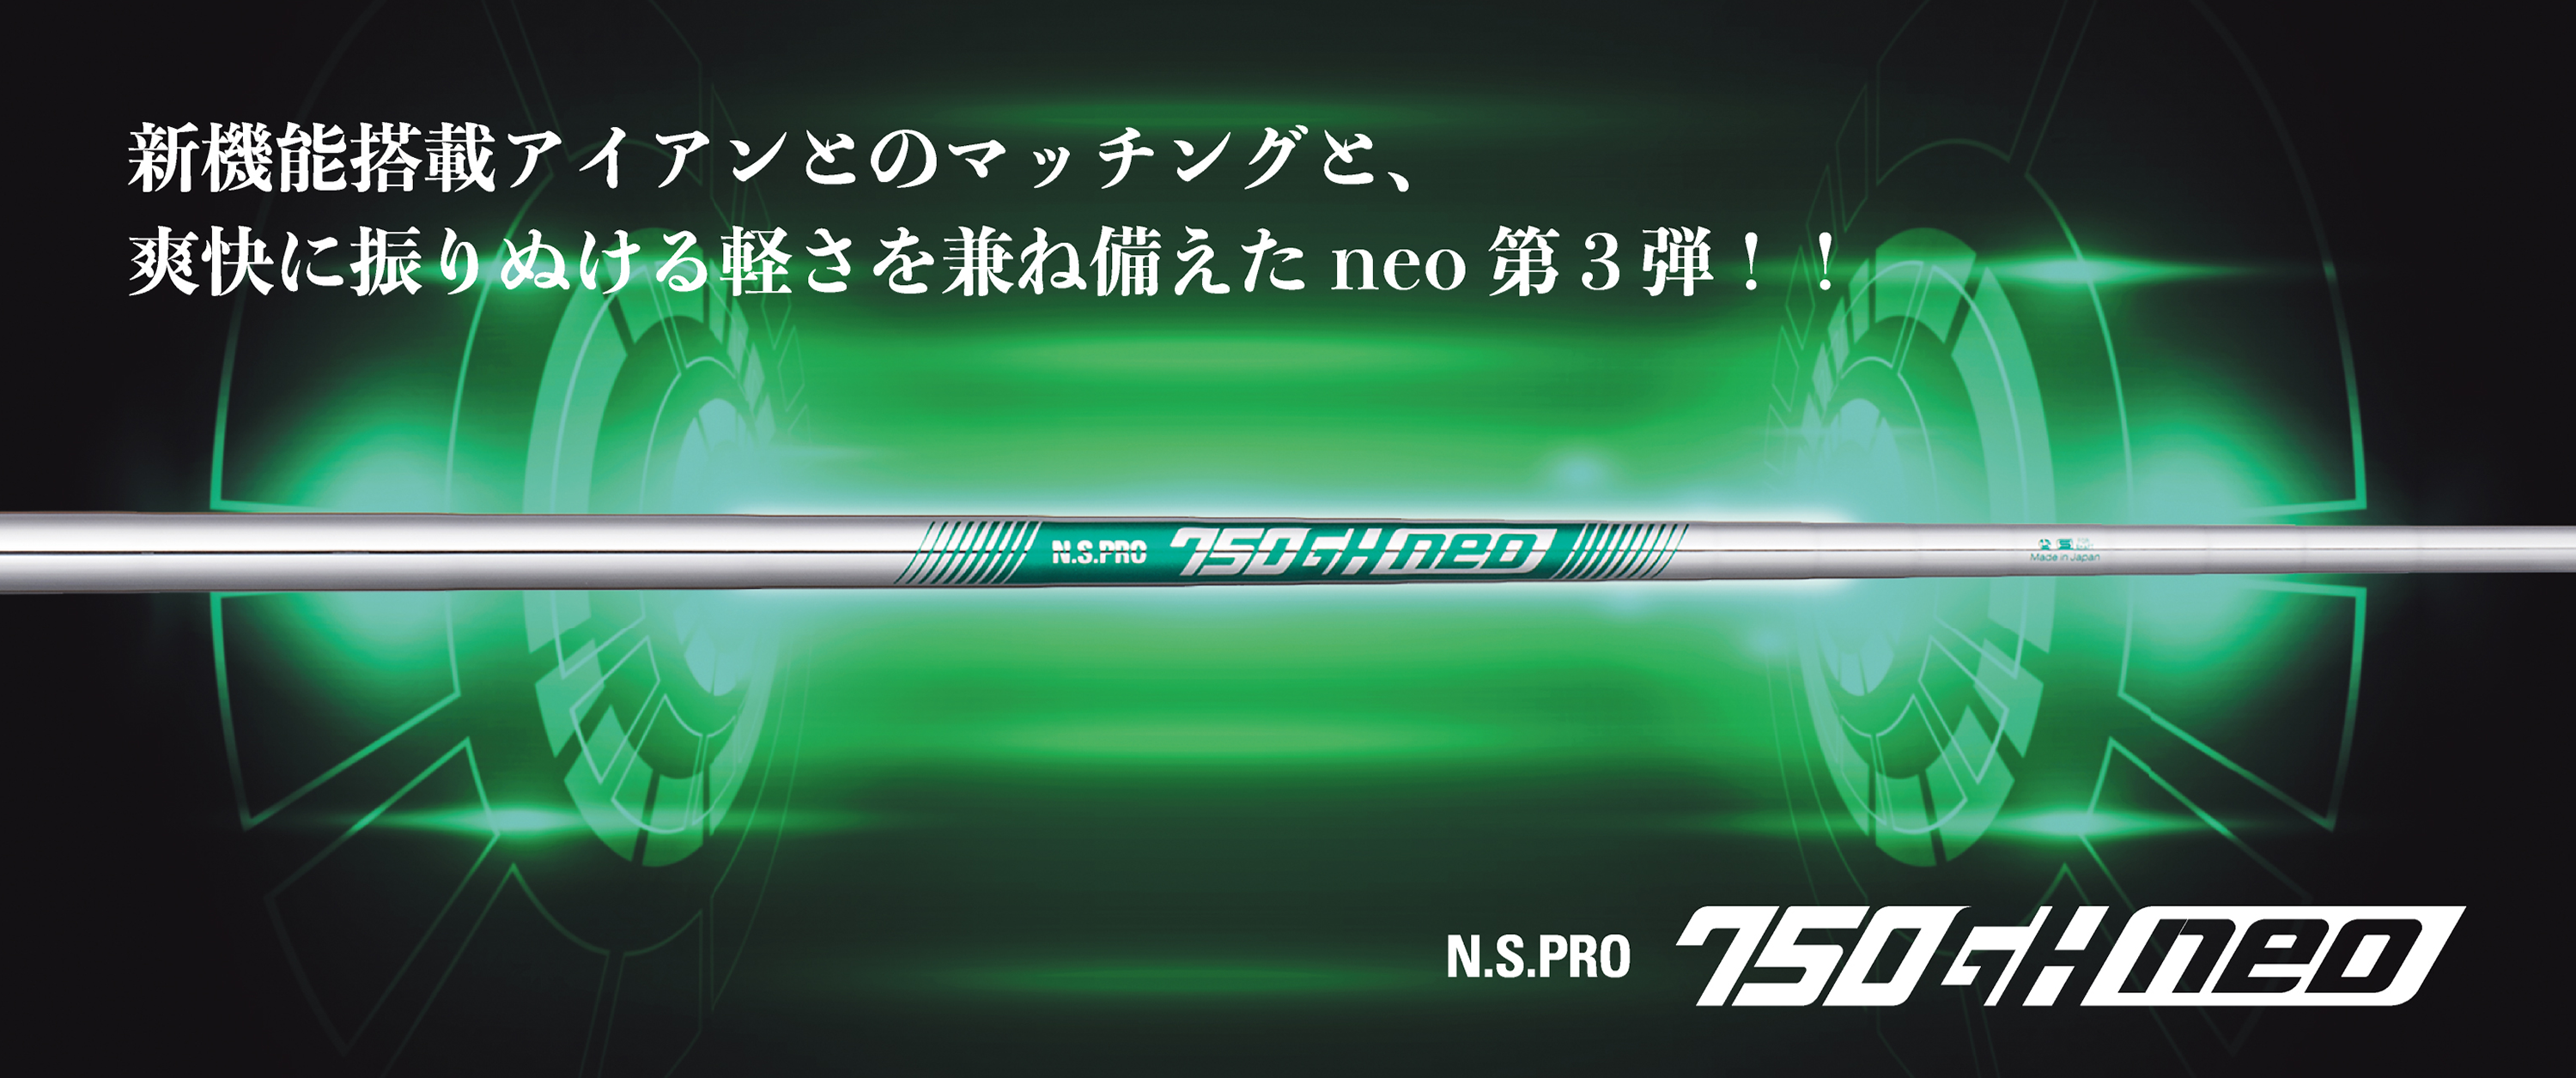 日本シャフト,N.S.PRO neo,750GH